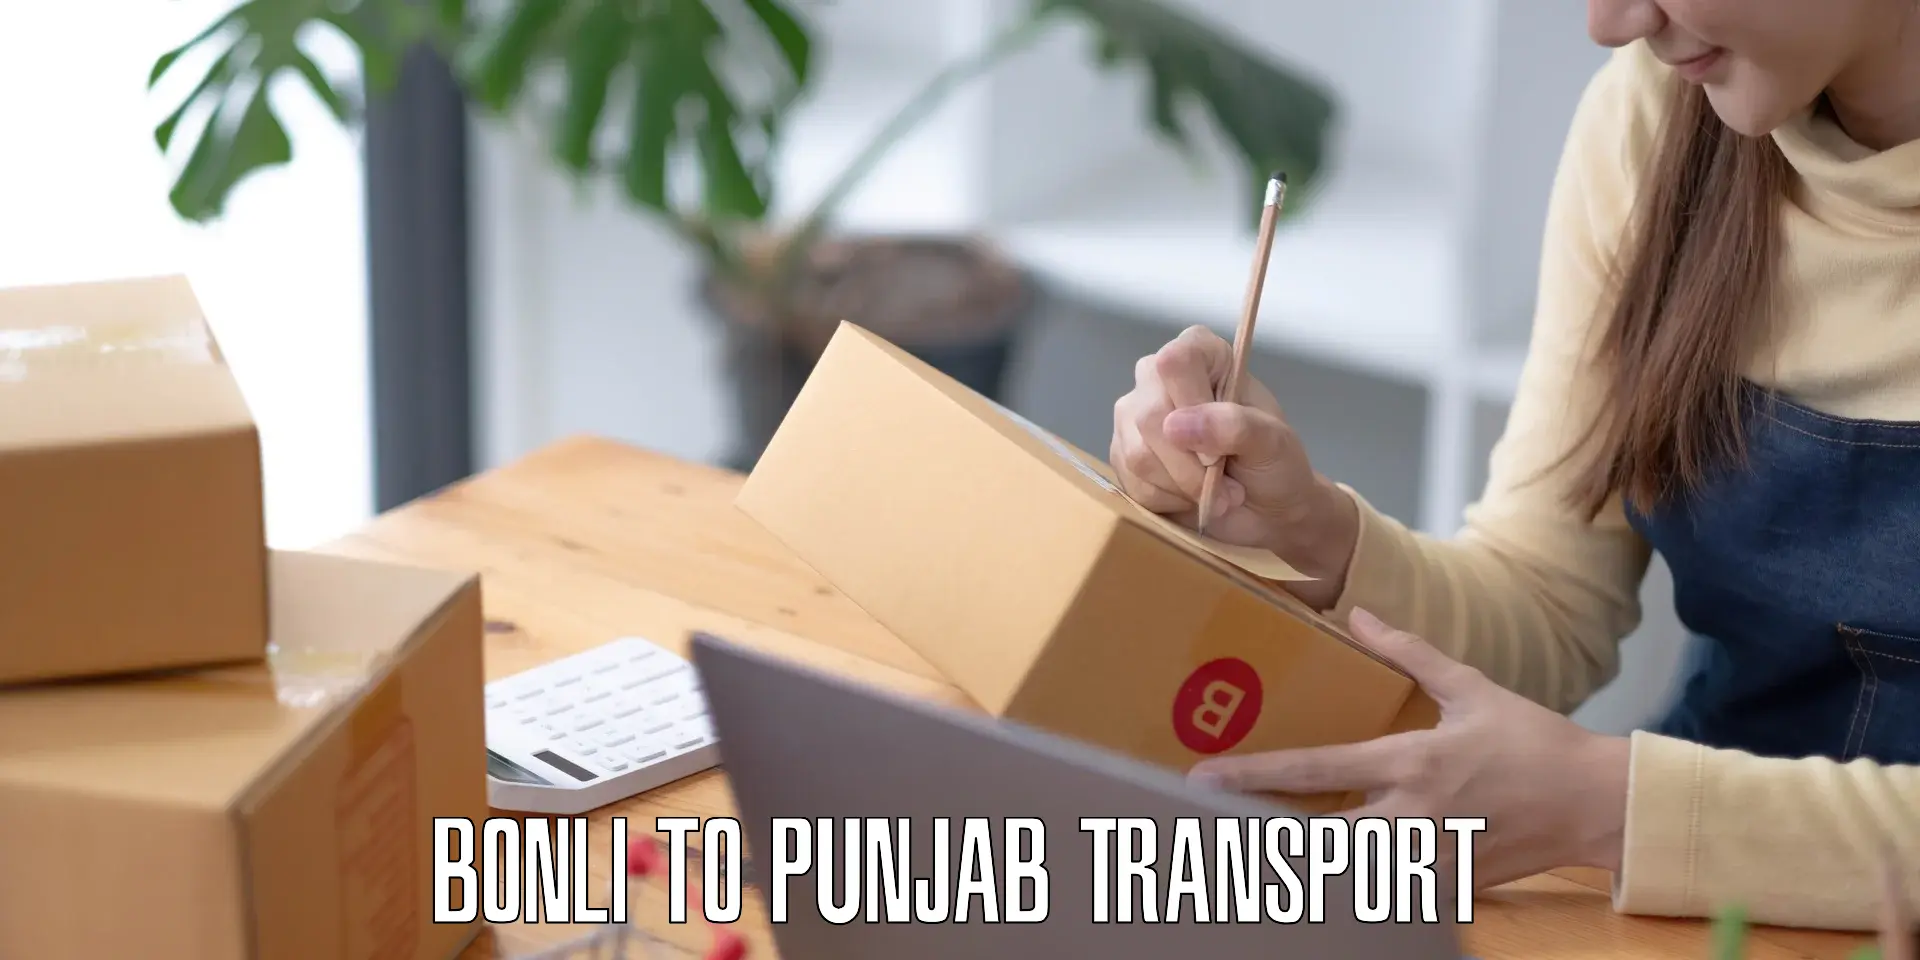 Online transport booking Bonli to Punjab